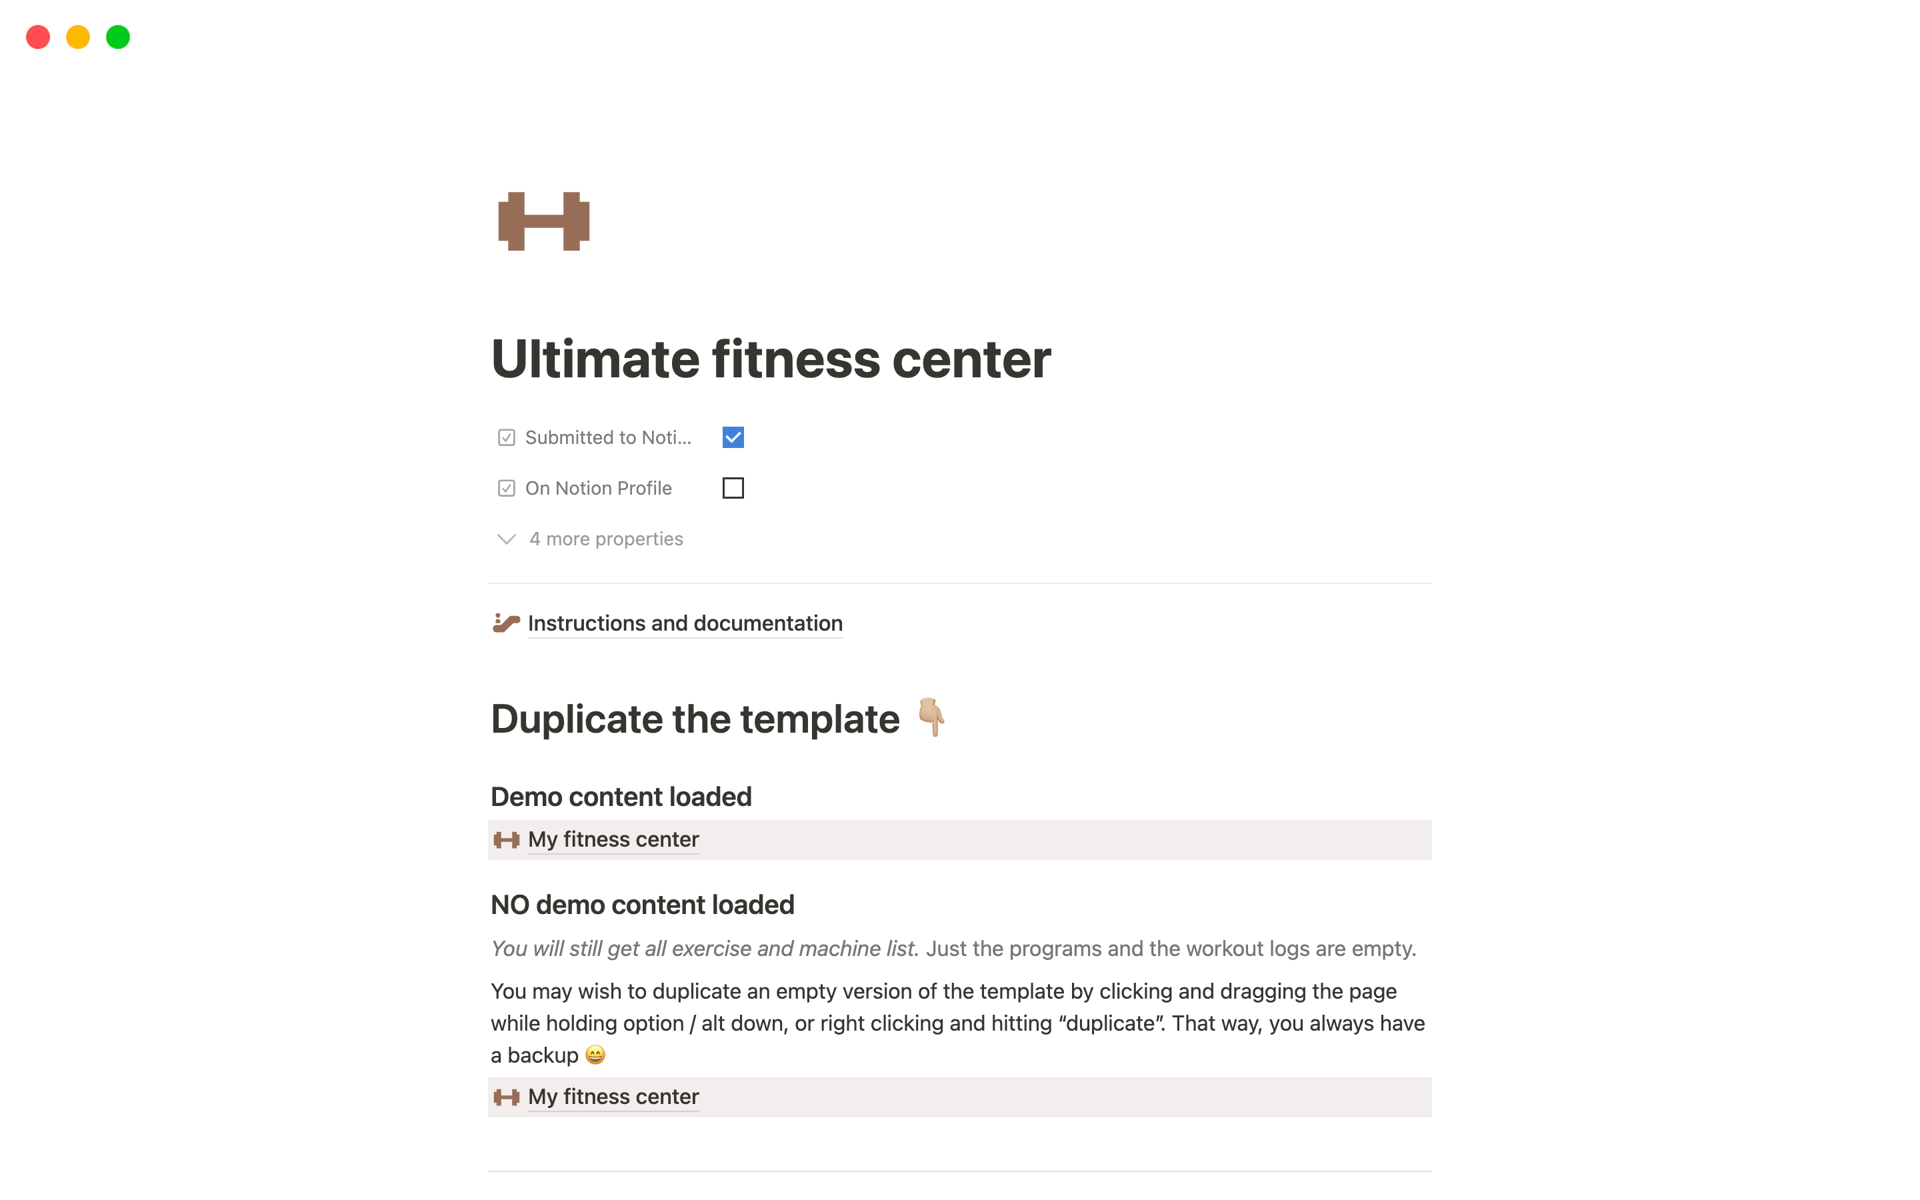 Uma prévia do modelo para Ultimate fitness center